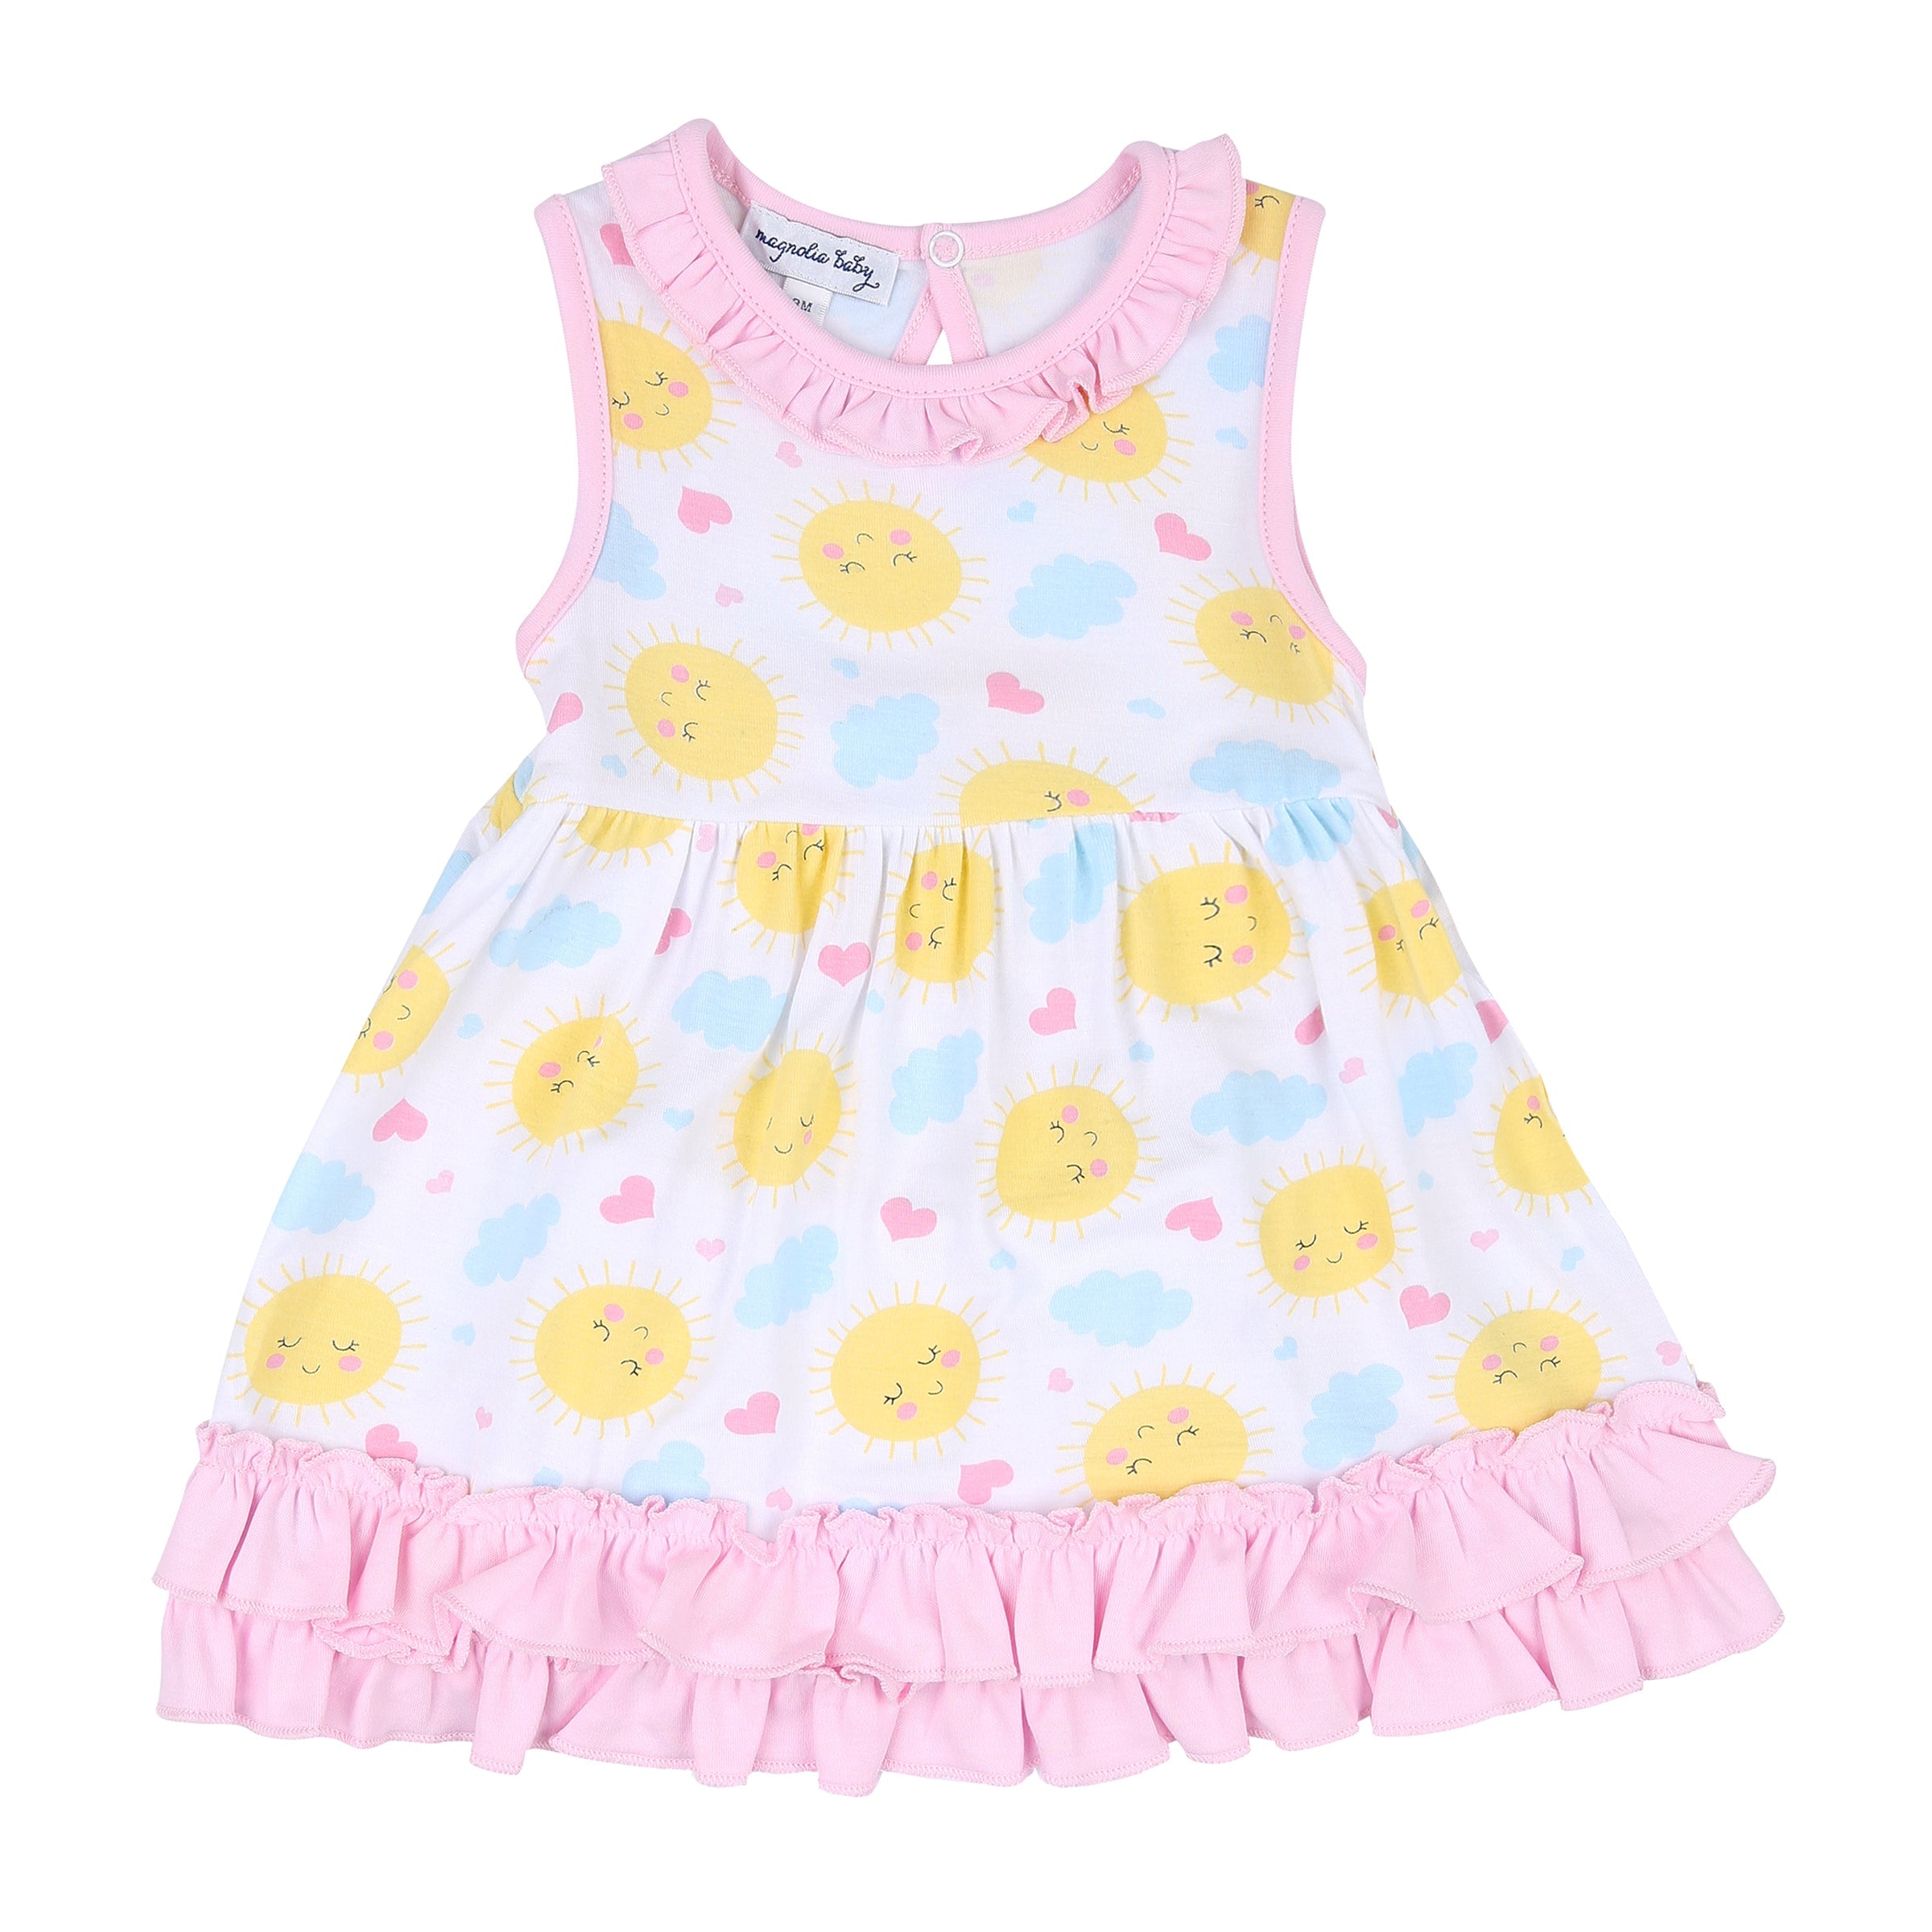 My Sunshine Bamboo Toddler Dress